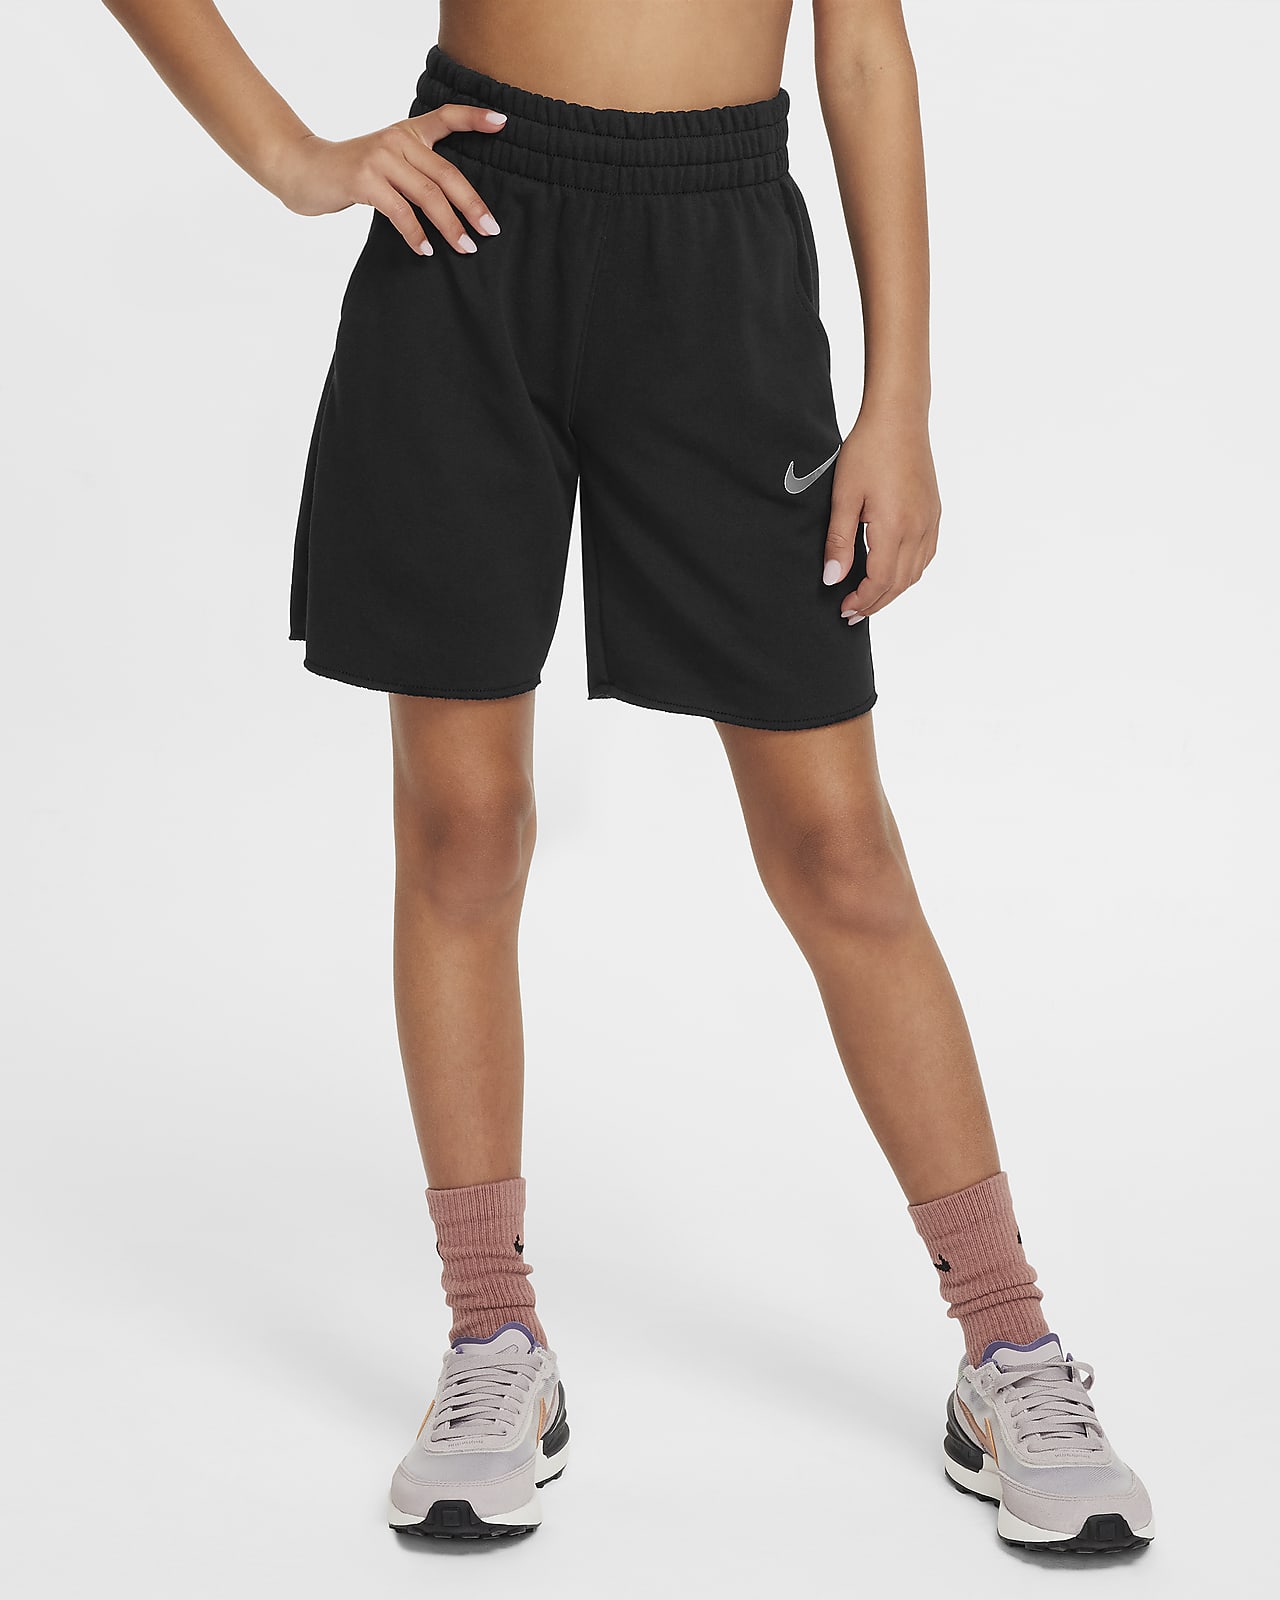 Calções de lã cardada Dri-FIT Nike Sportswear Júnior (Rapariga)